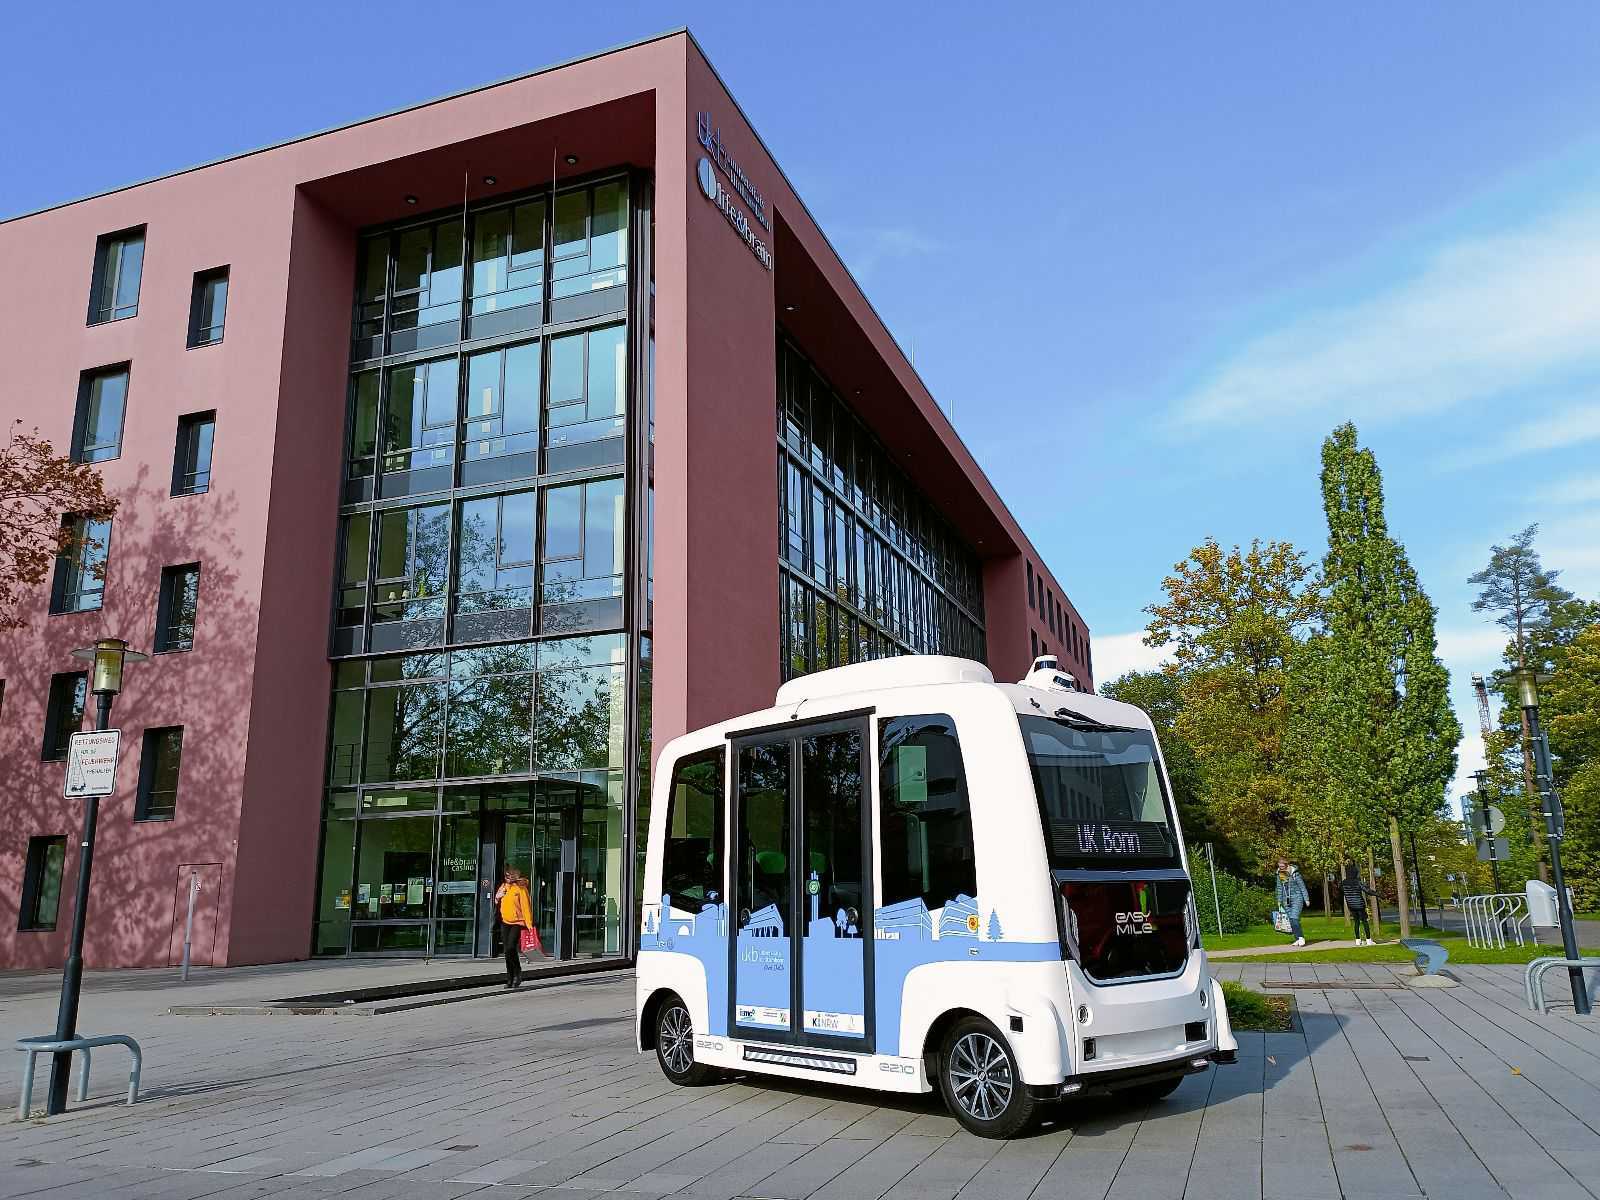 UK Bonn Autonomous Shuttle 